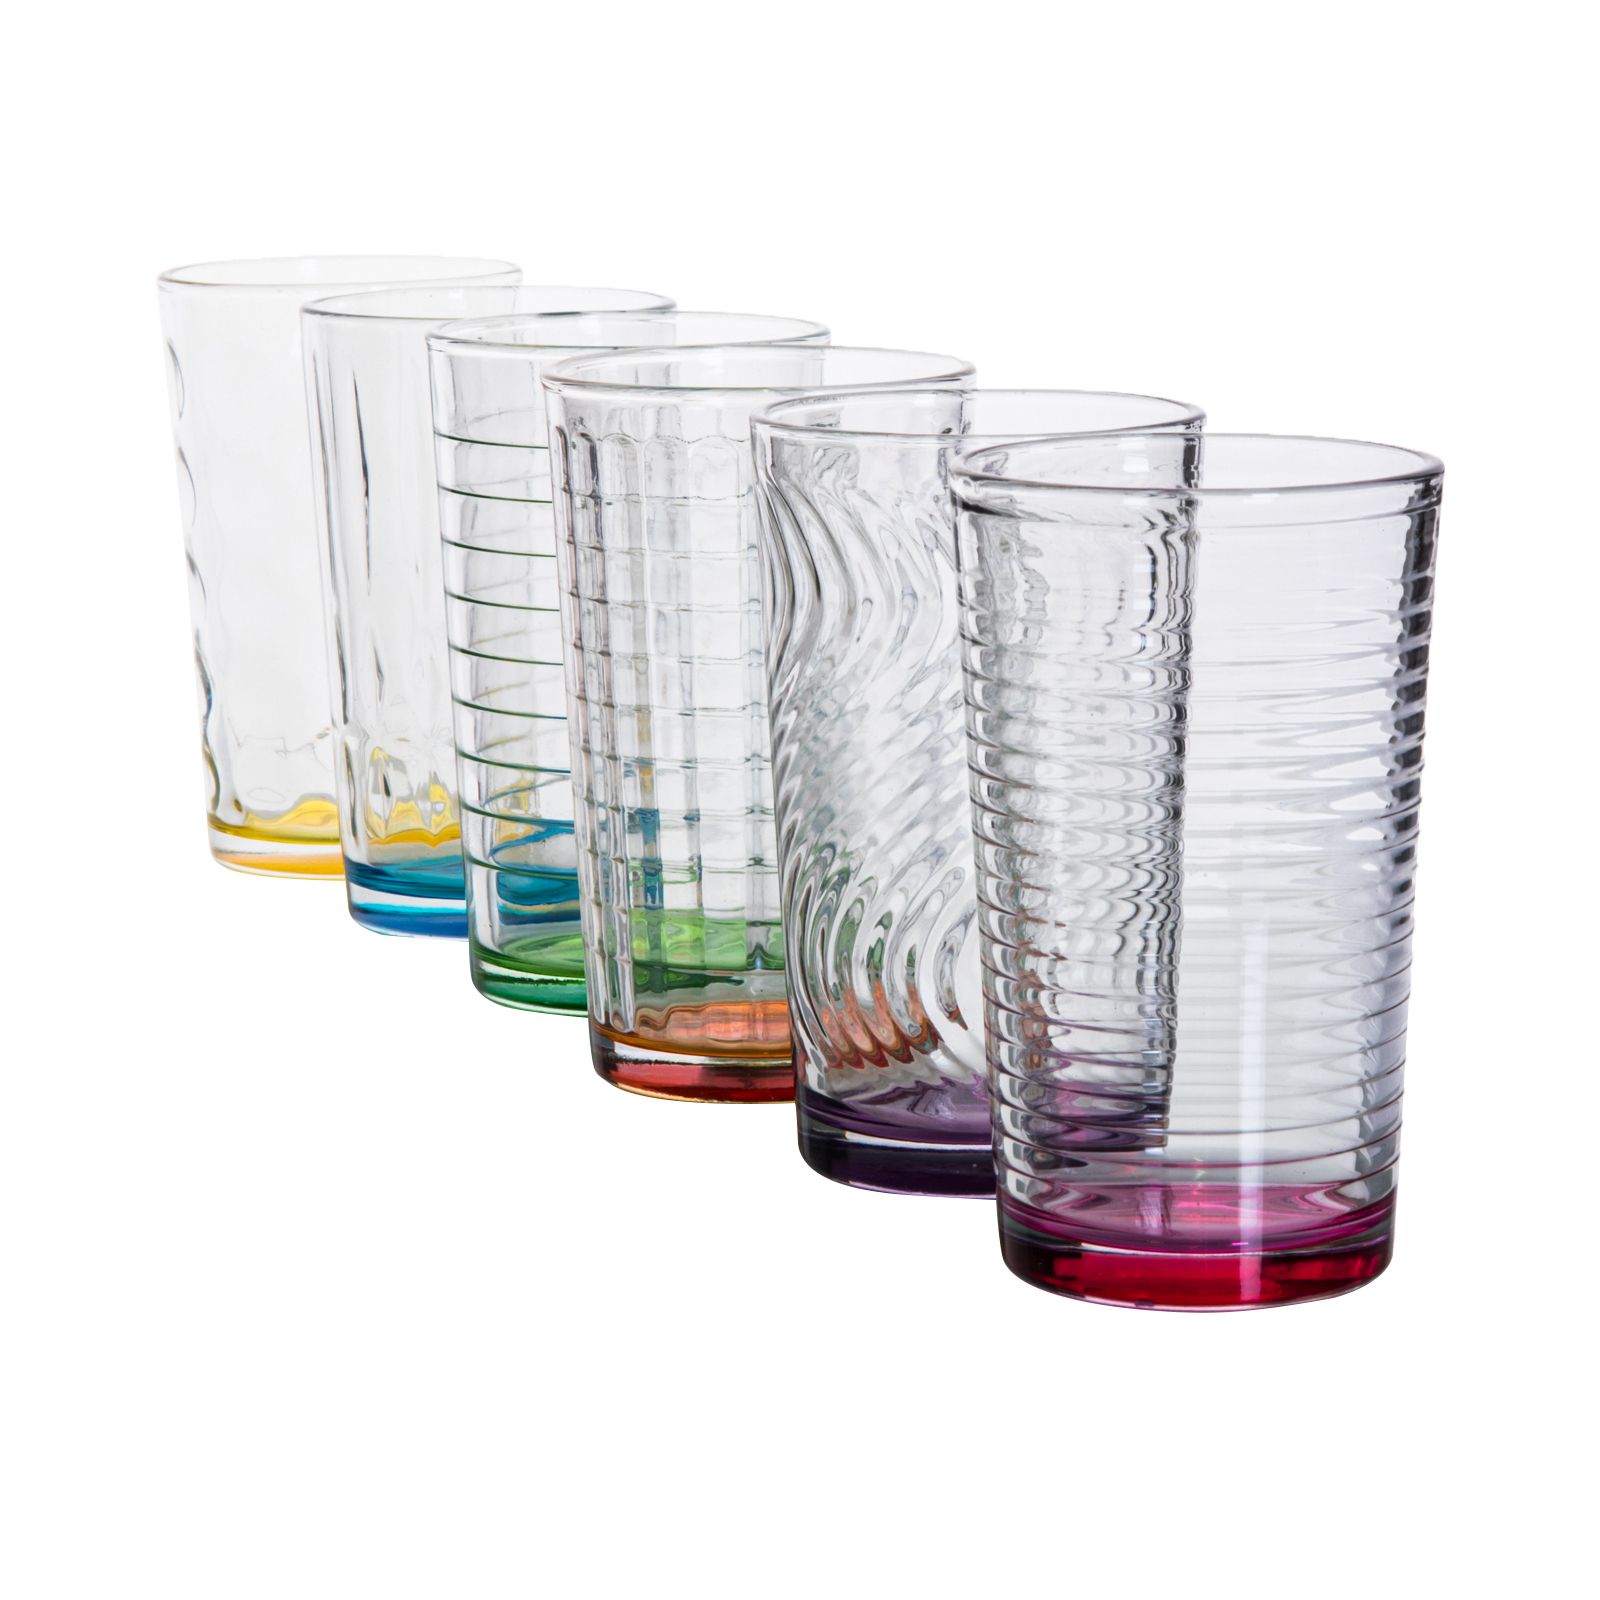 6 Trinkgläser Wassergläser Saftgläser Glas Gläser Beistellgläser STAPELBAR 